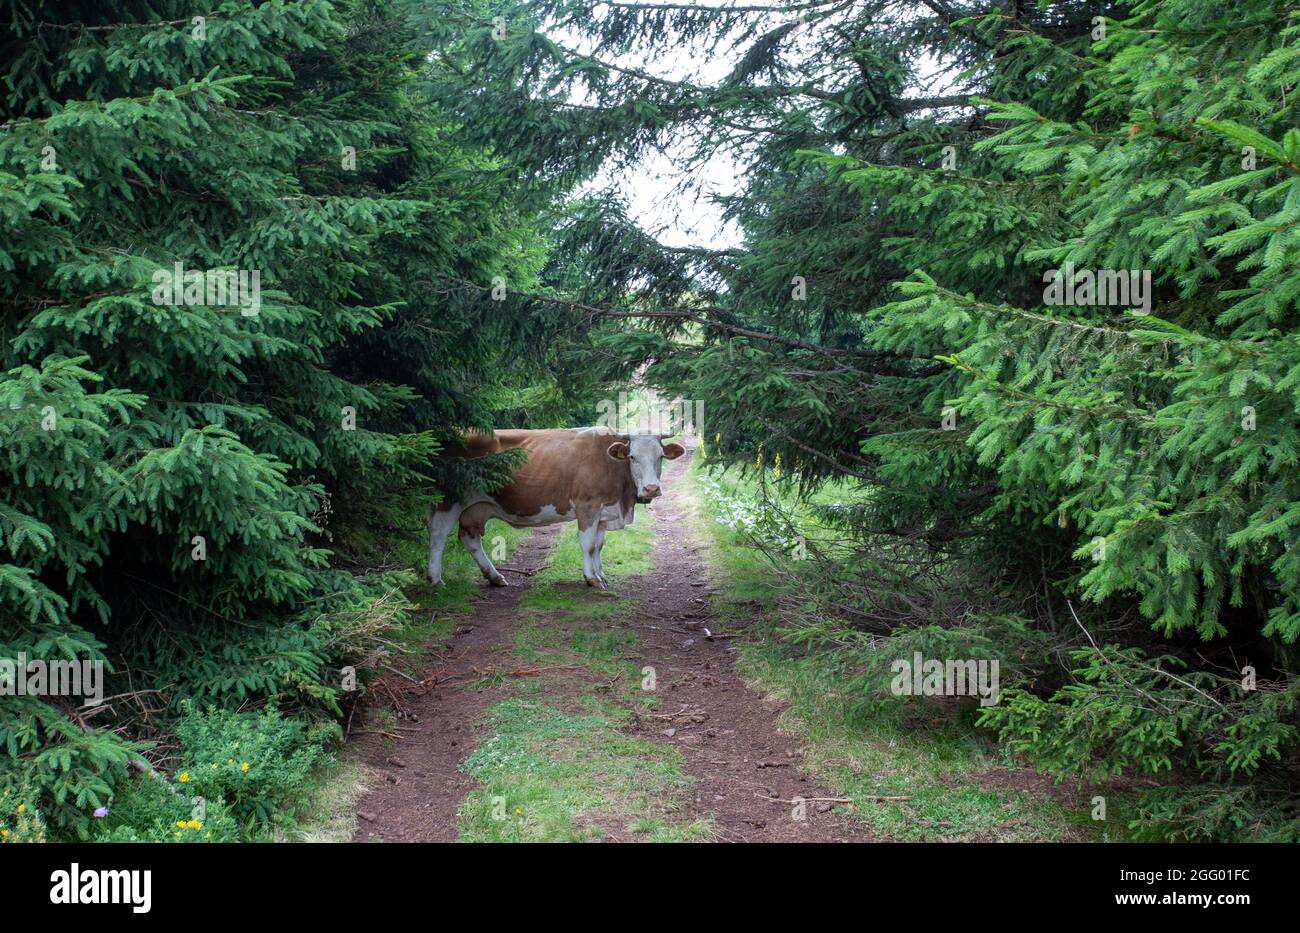 Vache Simmental debout entre arbres à feuilles persistantes en forêt. Élevage traditionnel de bovins naturels sur les prairies des hautes montagnes Banque D'Images